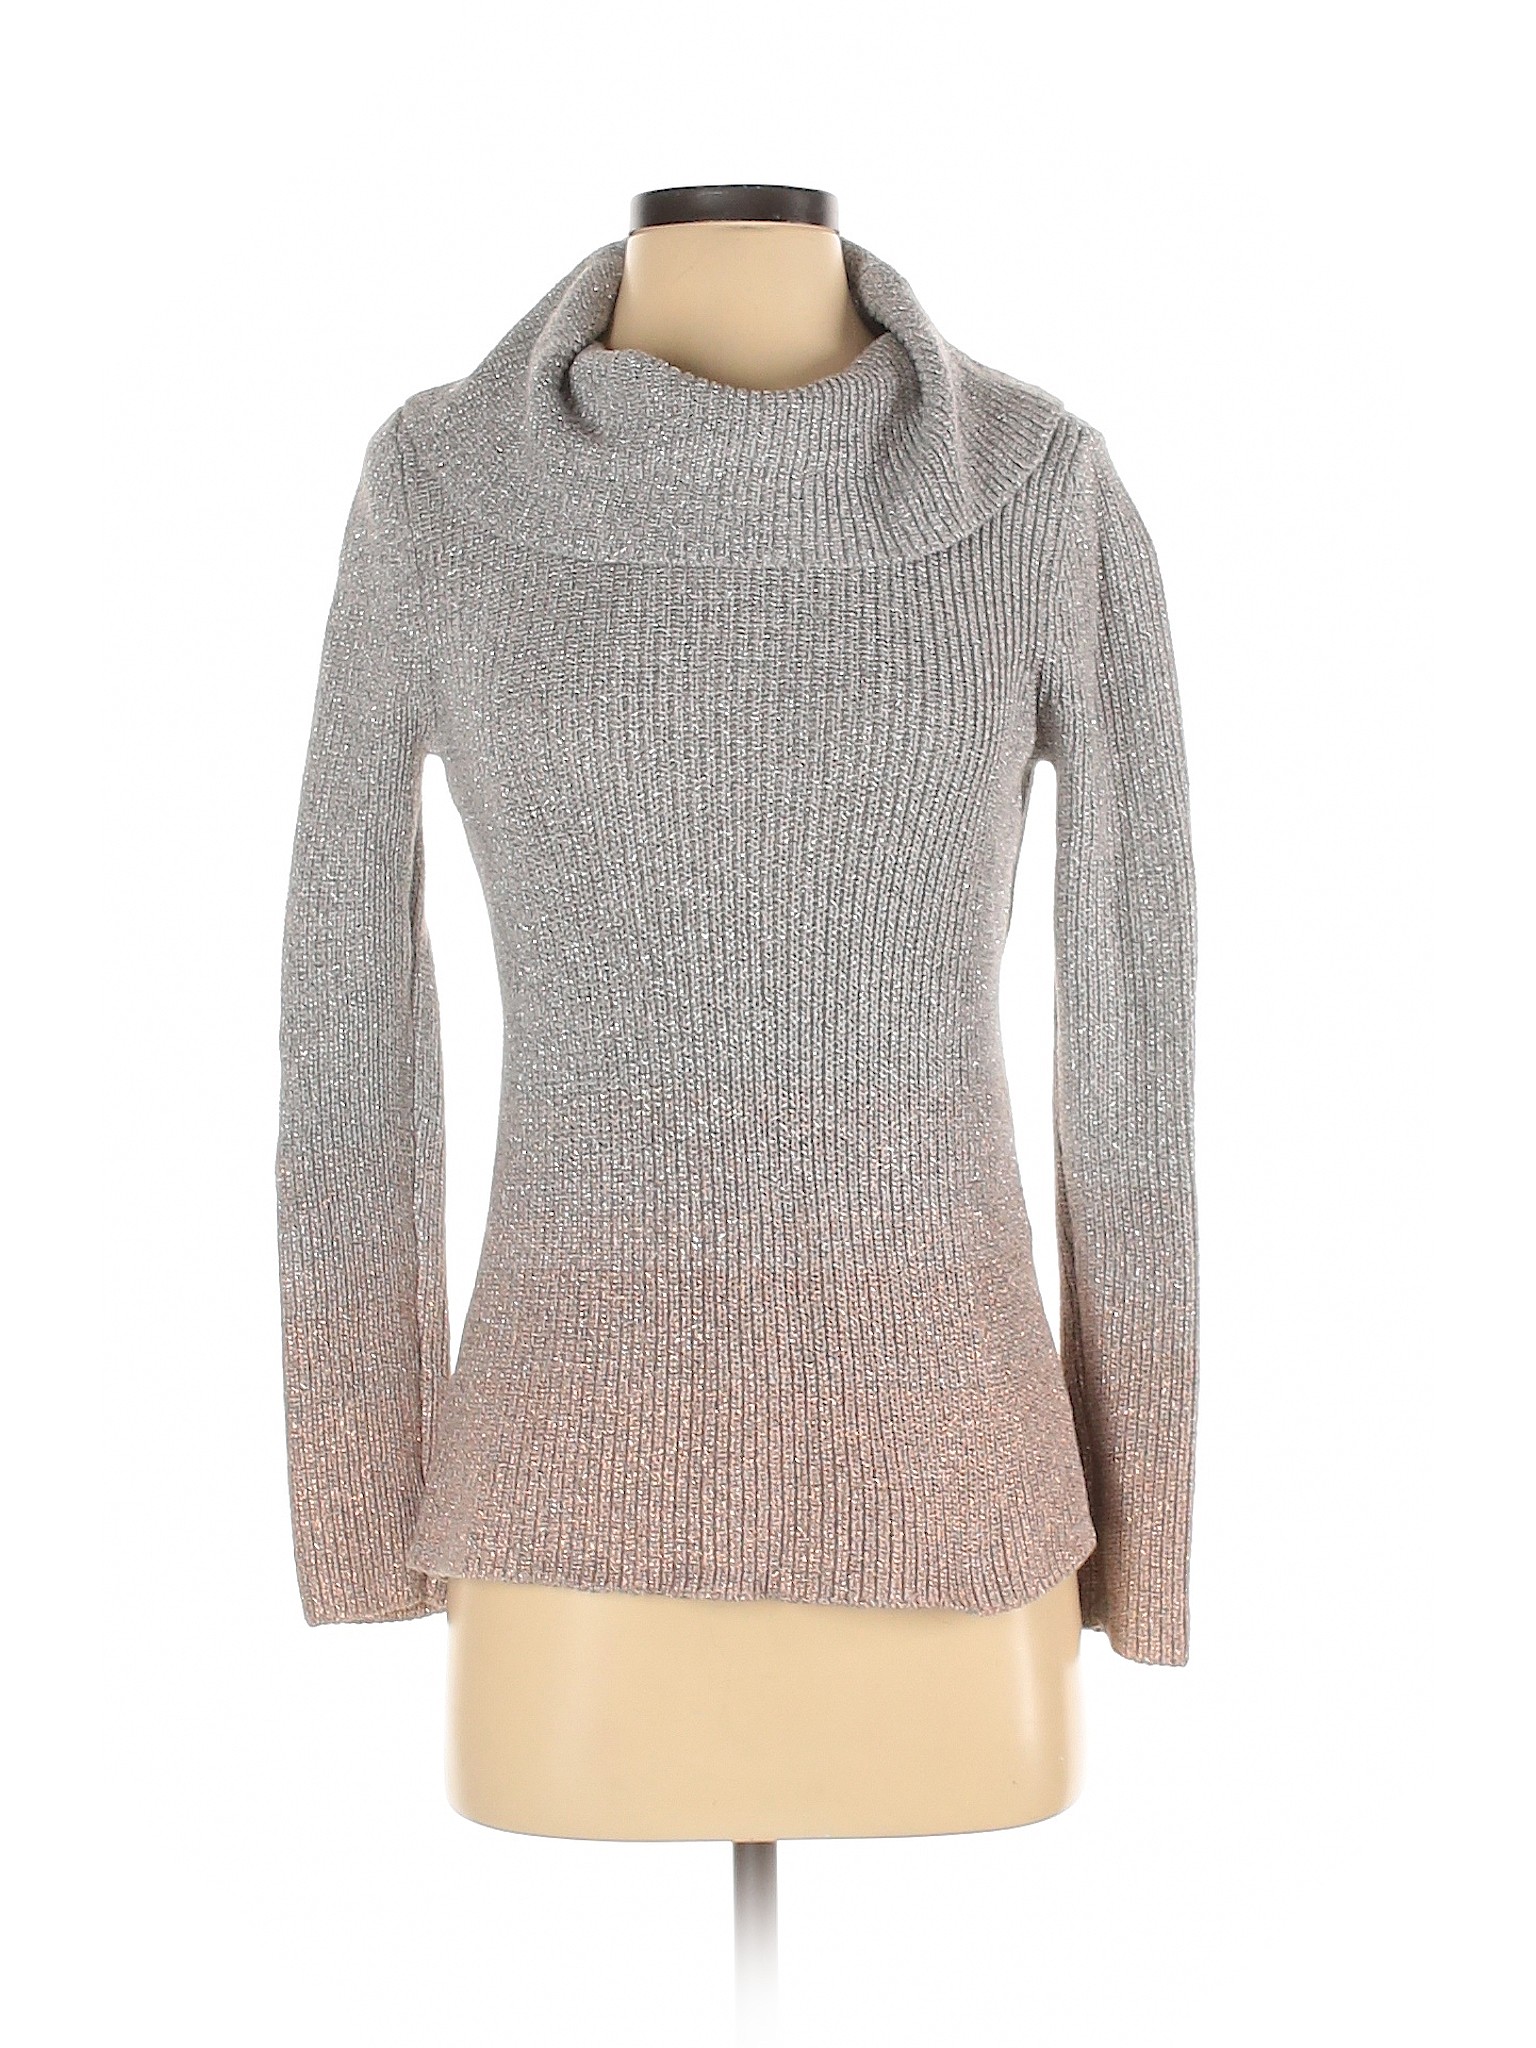 White House Black Market Women Gray Pullover Sweater S | eBay